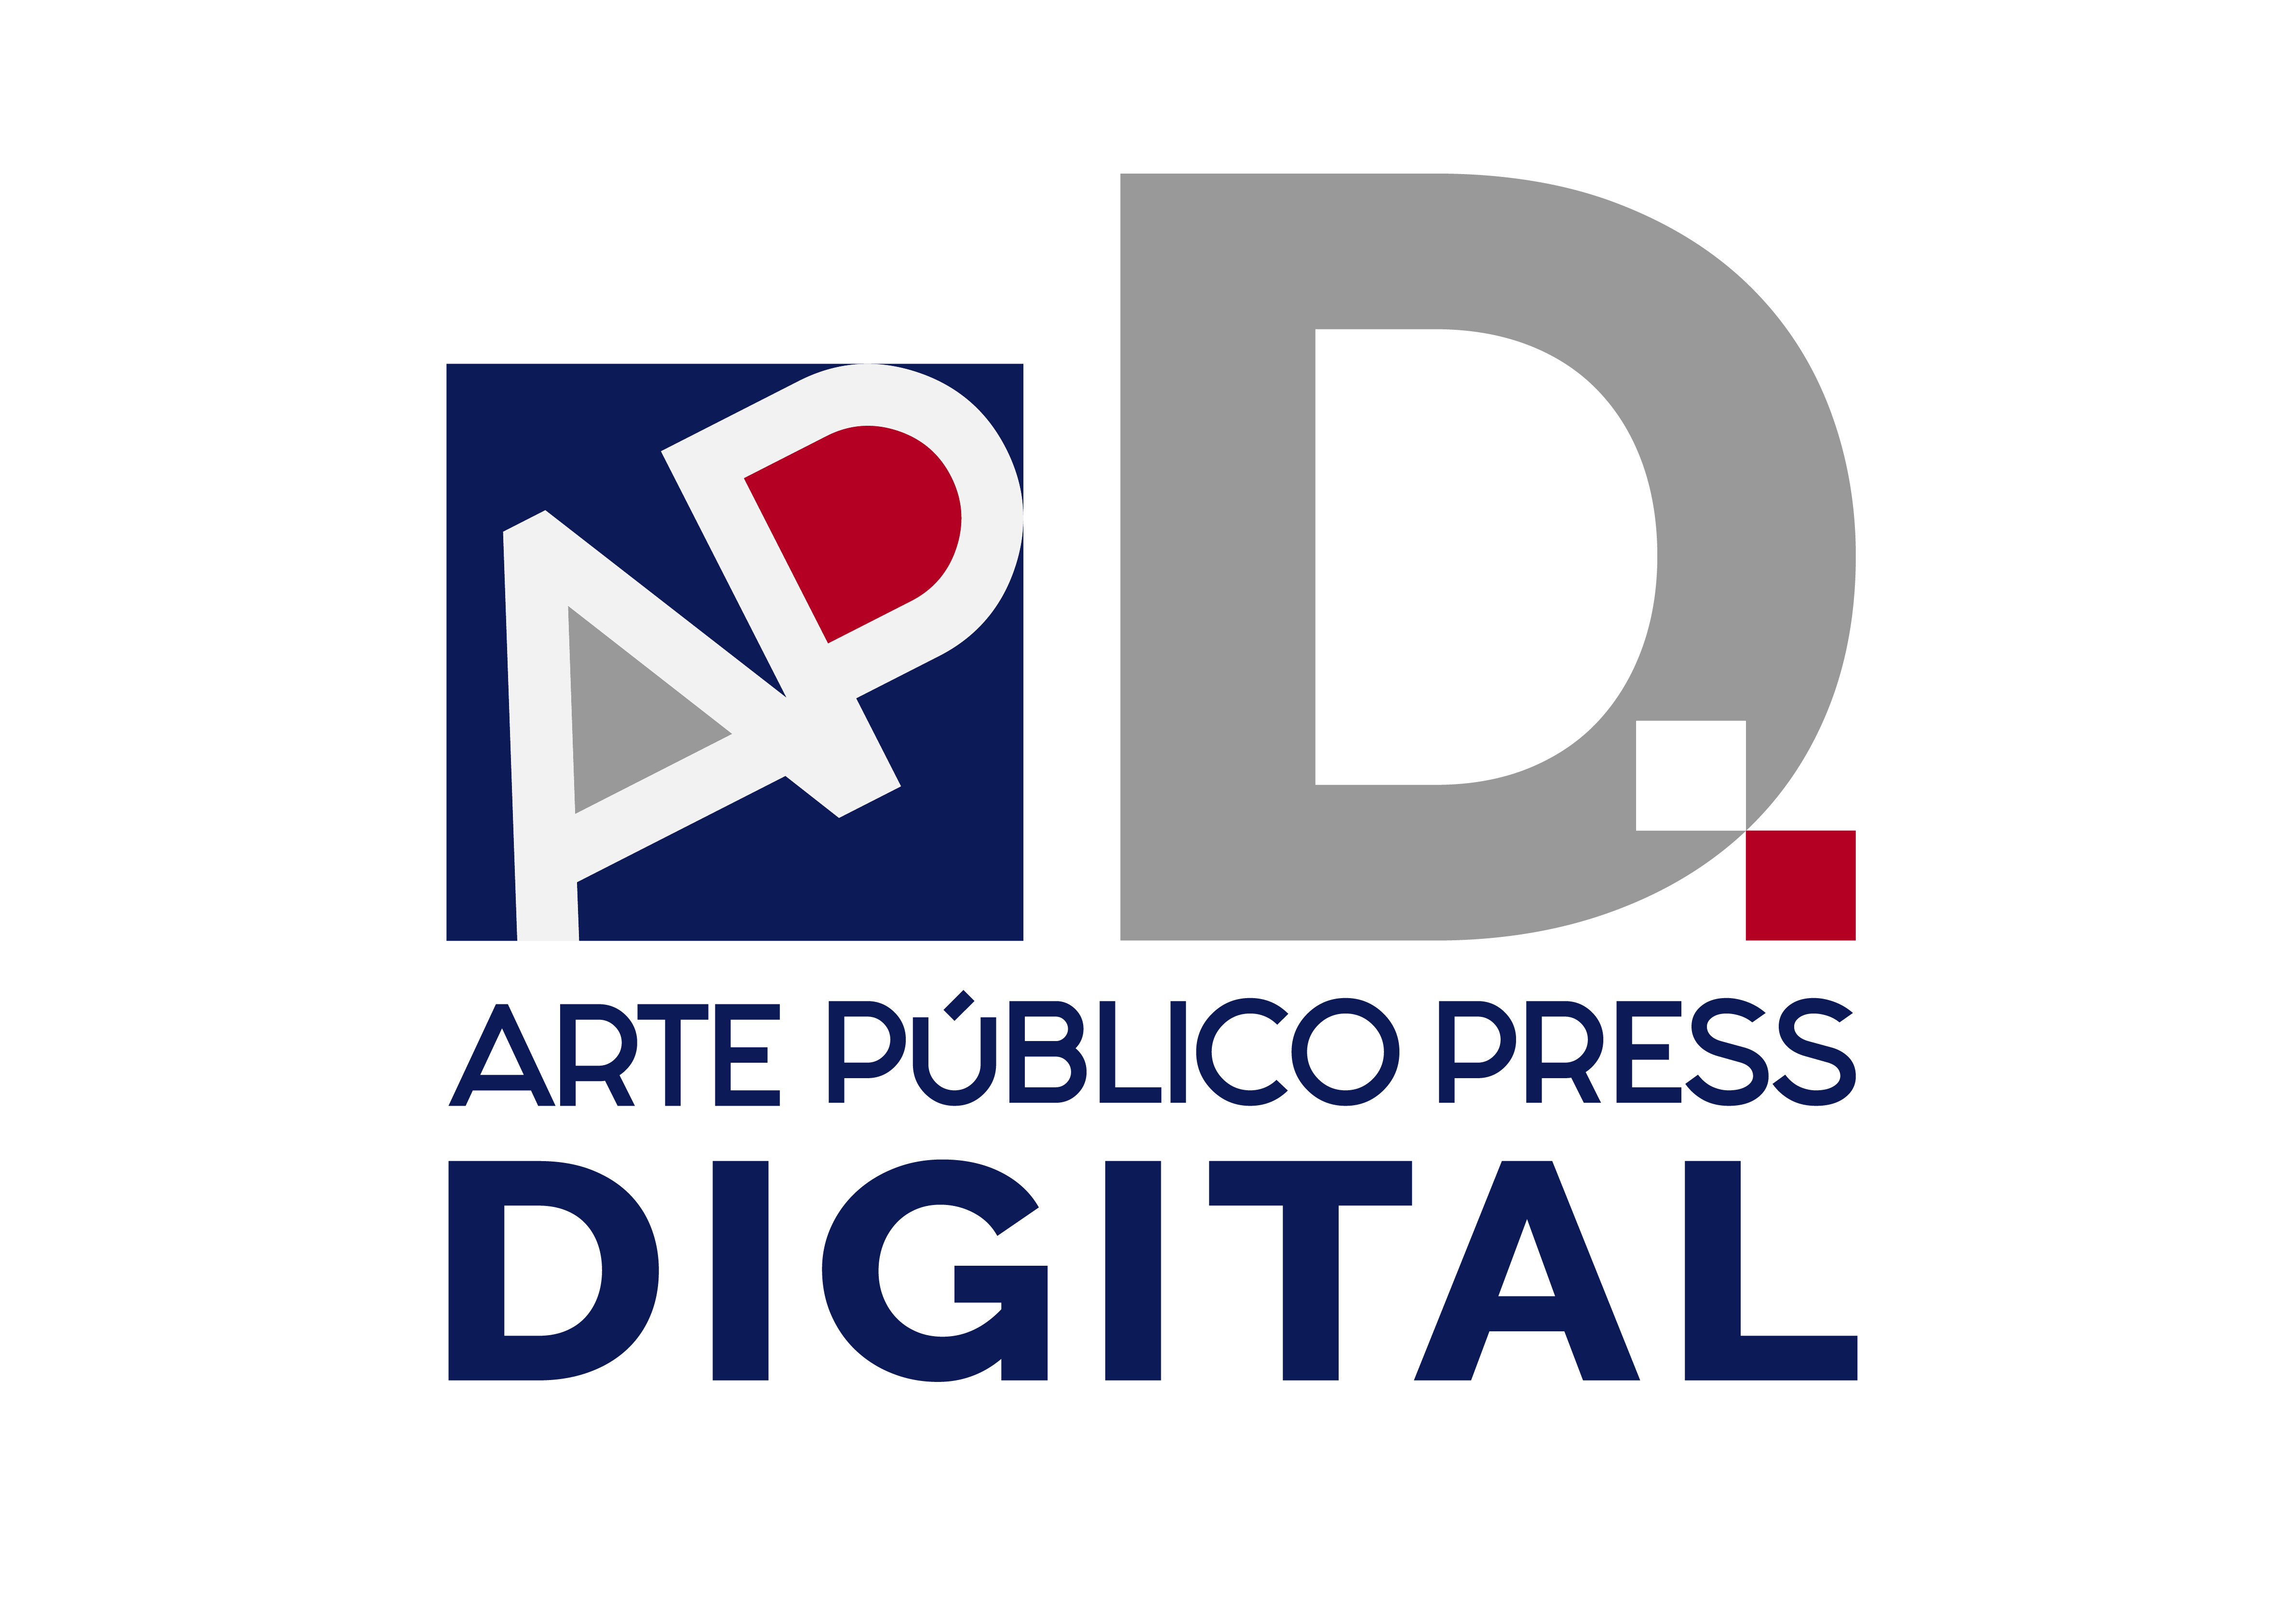 Logo of Arte Público Press